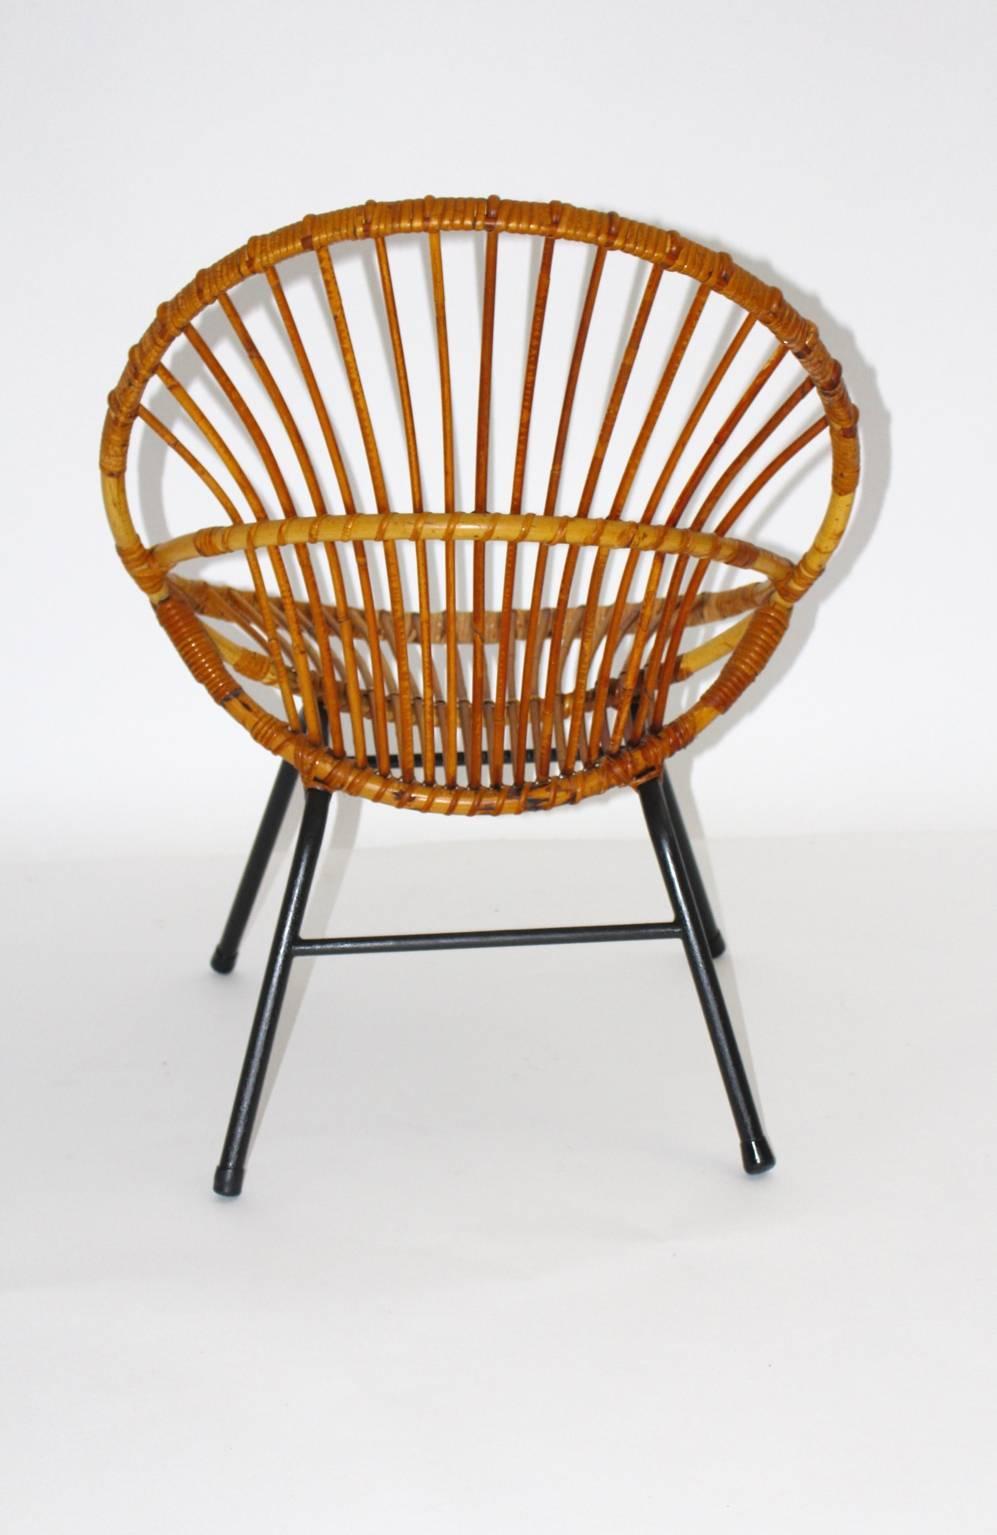 Mid Century Modern Vintage Rattanstuhl von Rohe Noordwolde, Niederlande, 1960er Jahre.
Die Sitzschale wurde aus Rattan gefertigt und das Stahlrohrgestell schwarz lackiert.
Die Metallfüße sind mit Gummipuffern versehen.
Der Sitz ist in einem guten